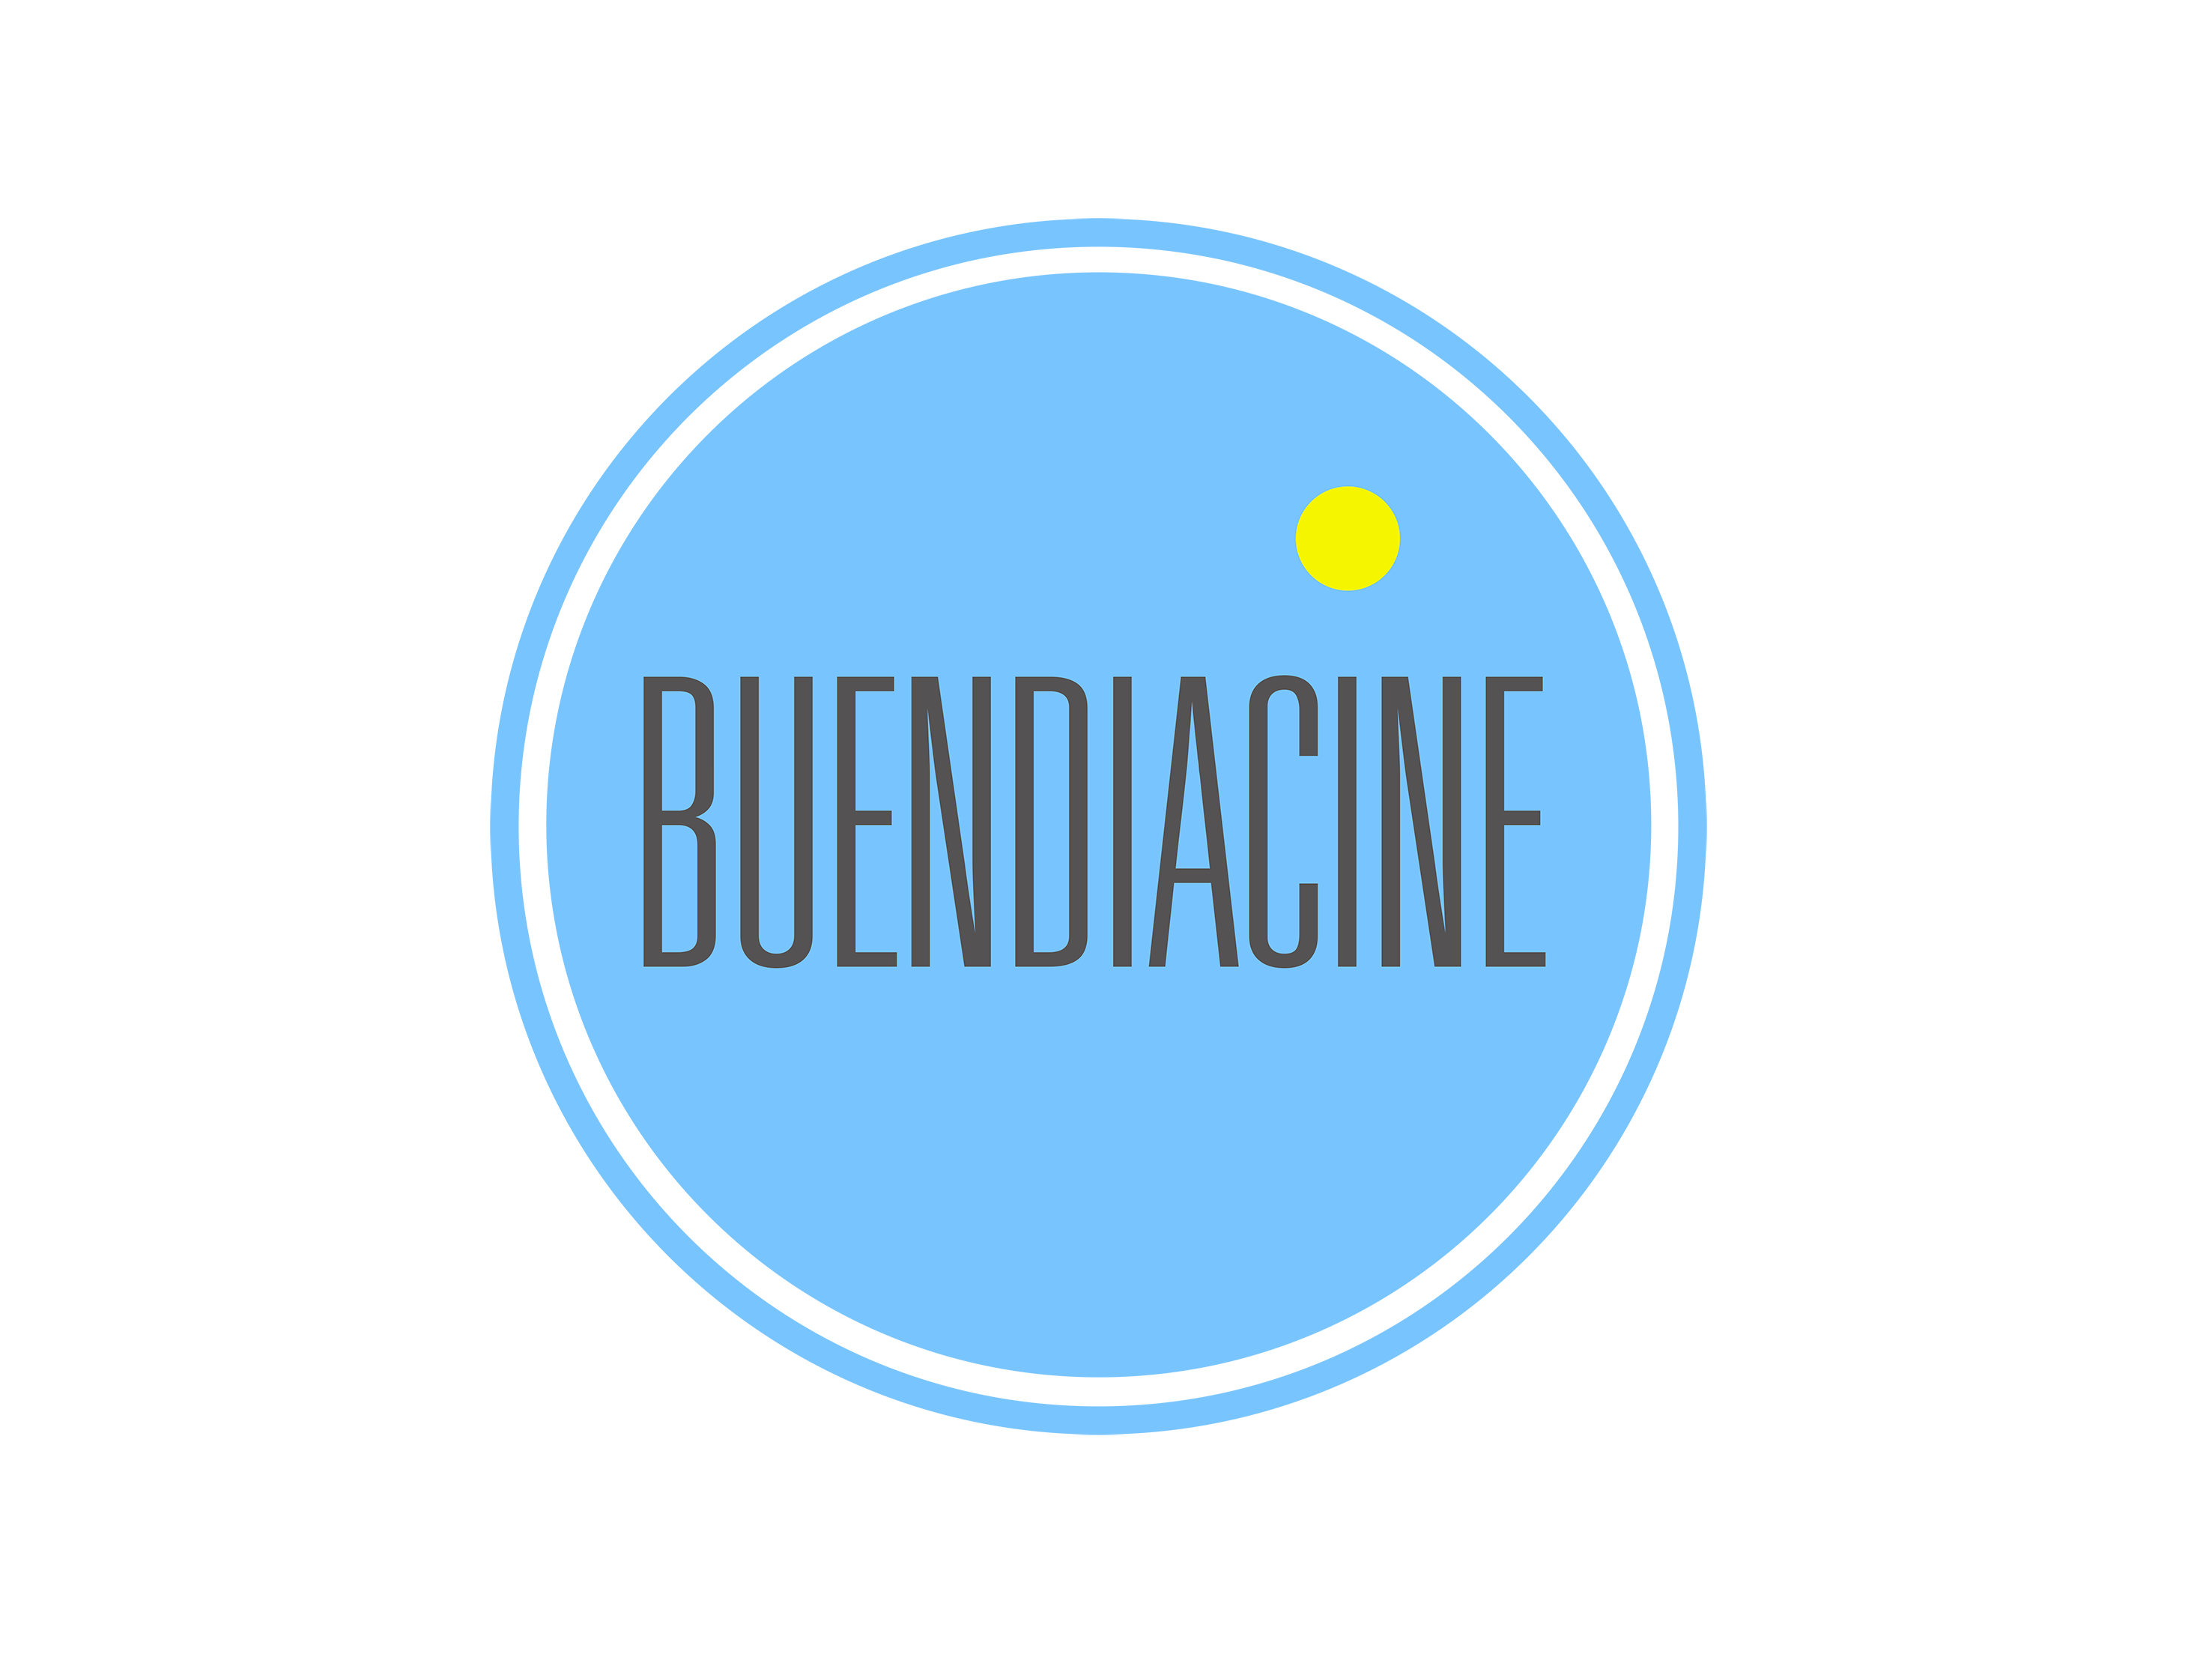 (c) Buendiacine.com